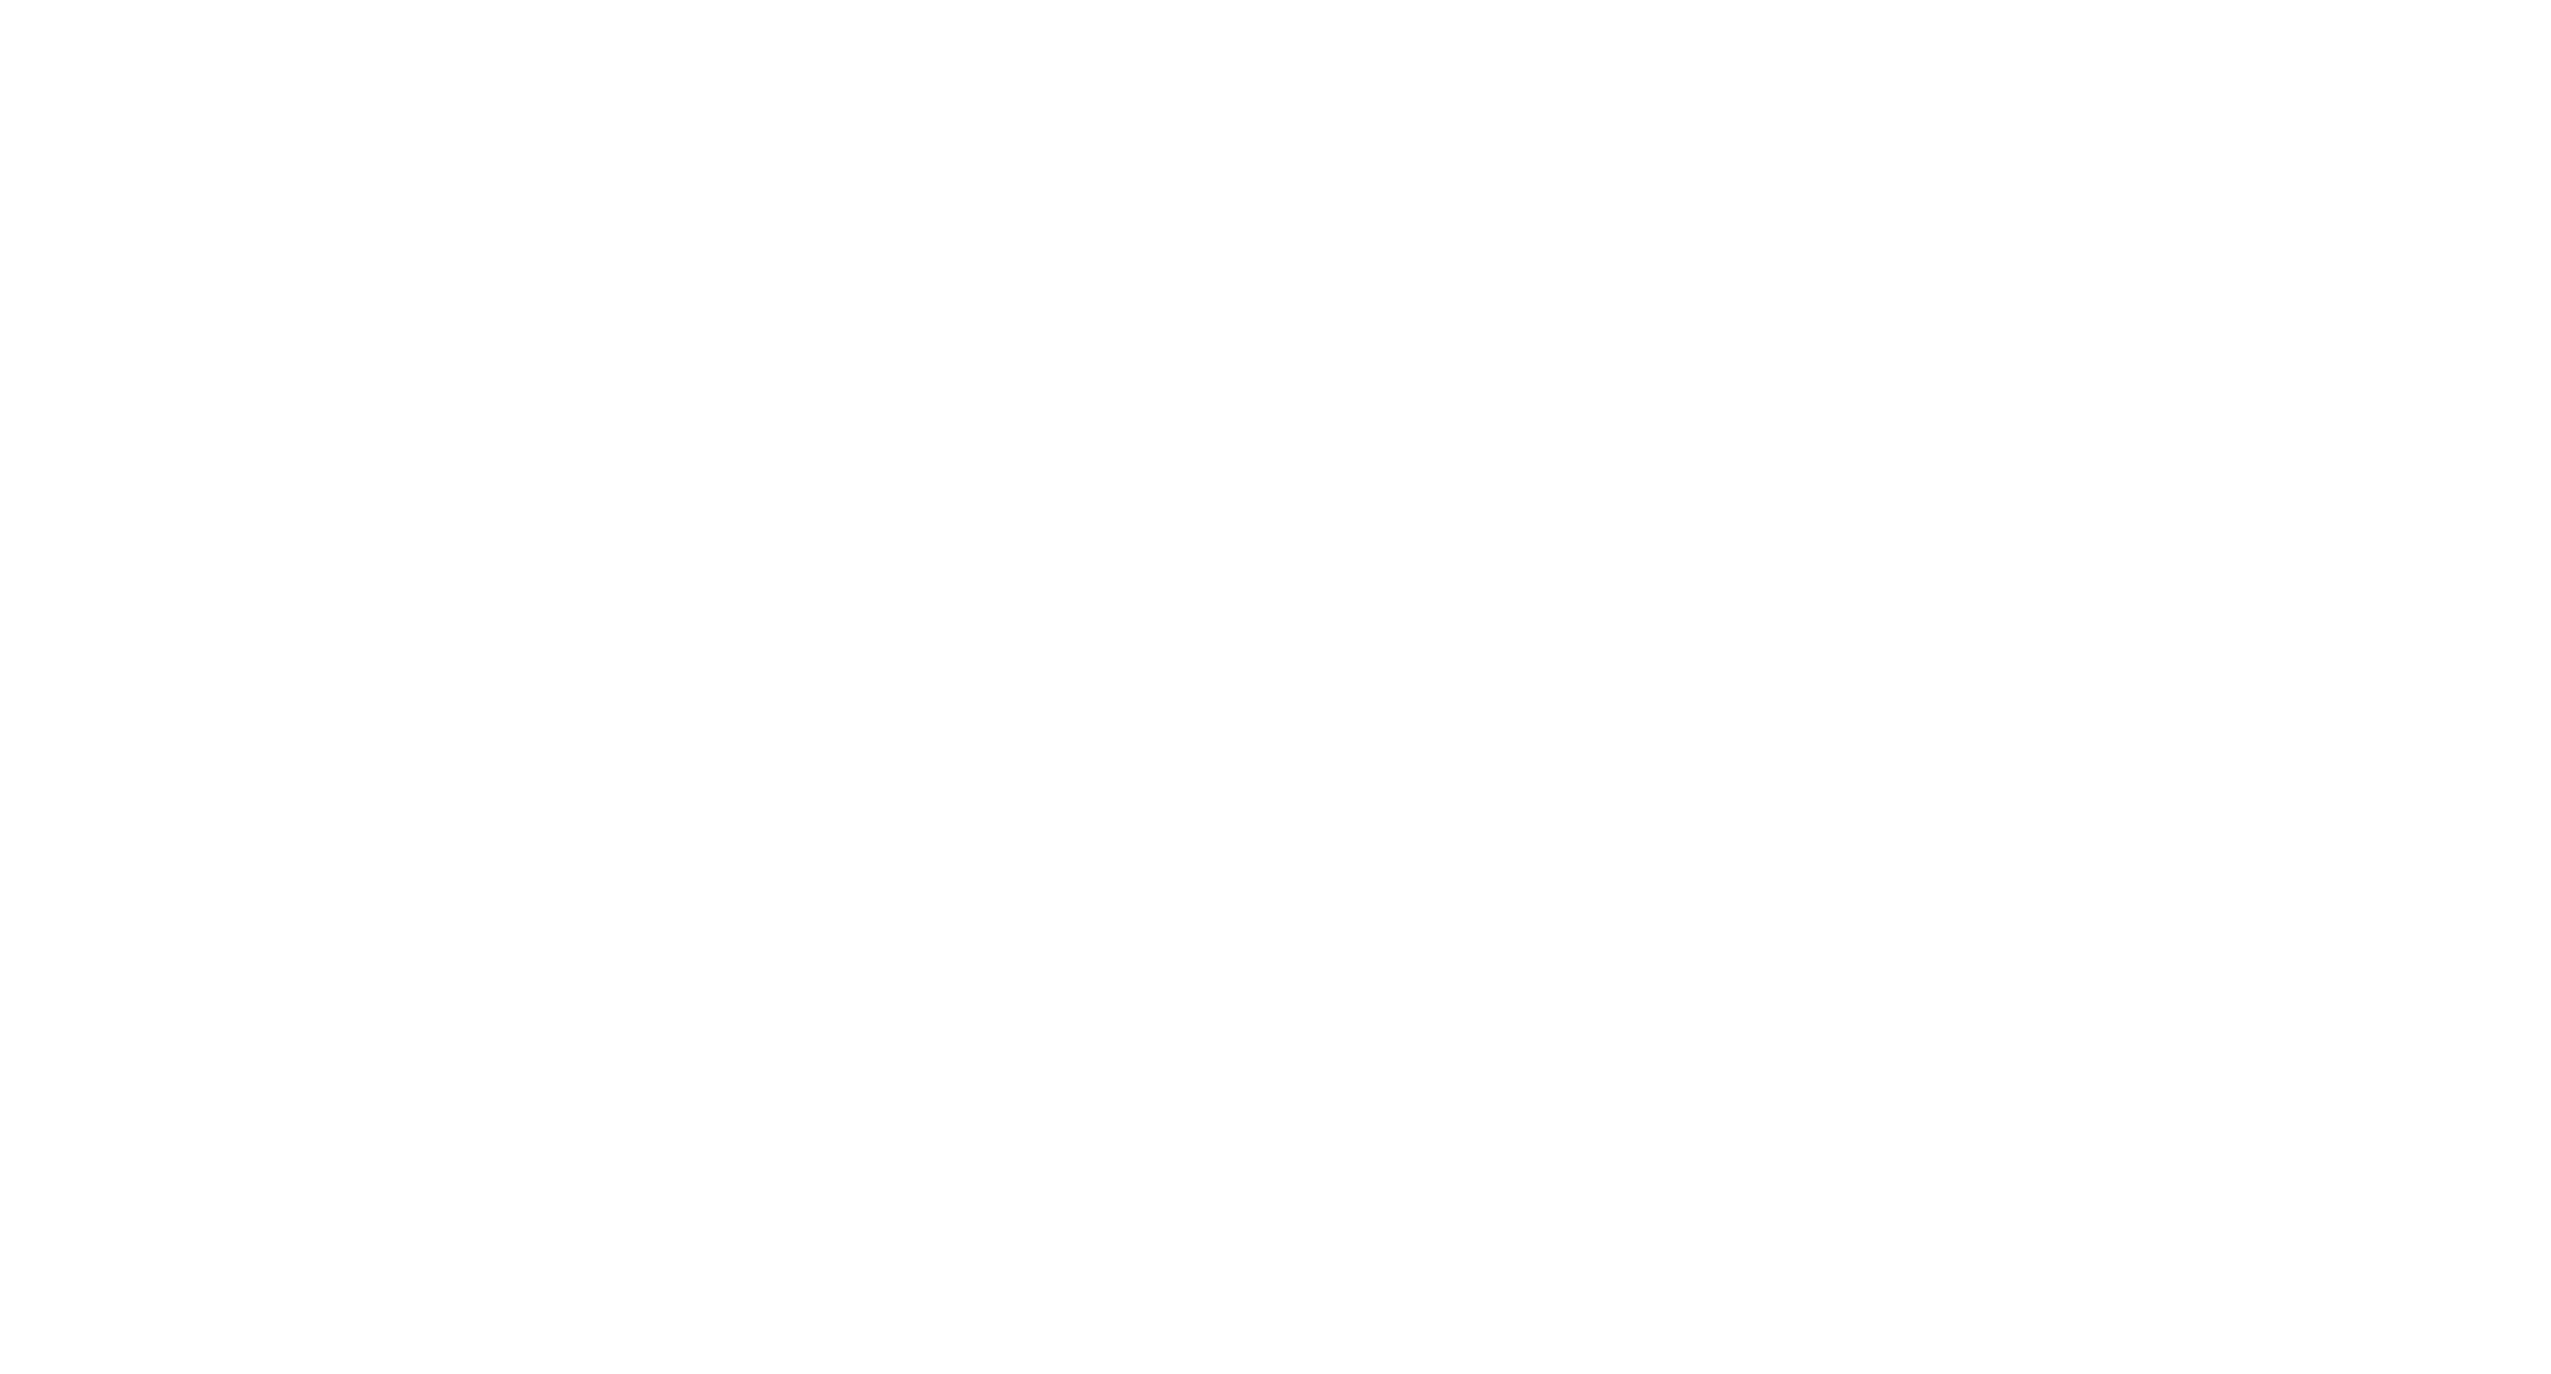 FERIA GENERAL 2017